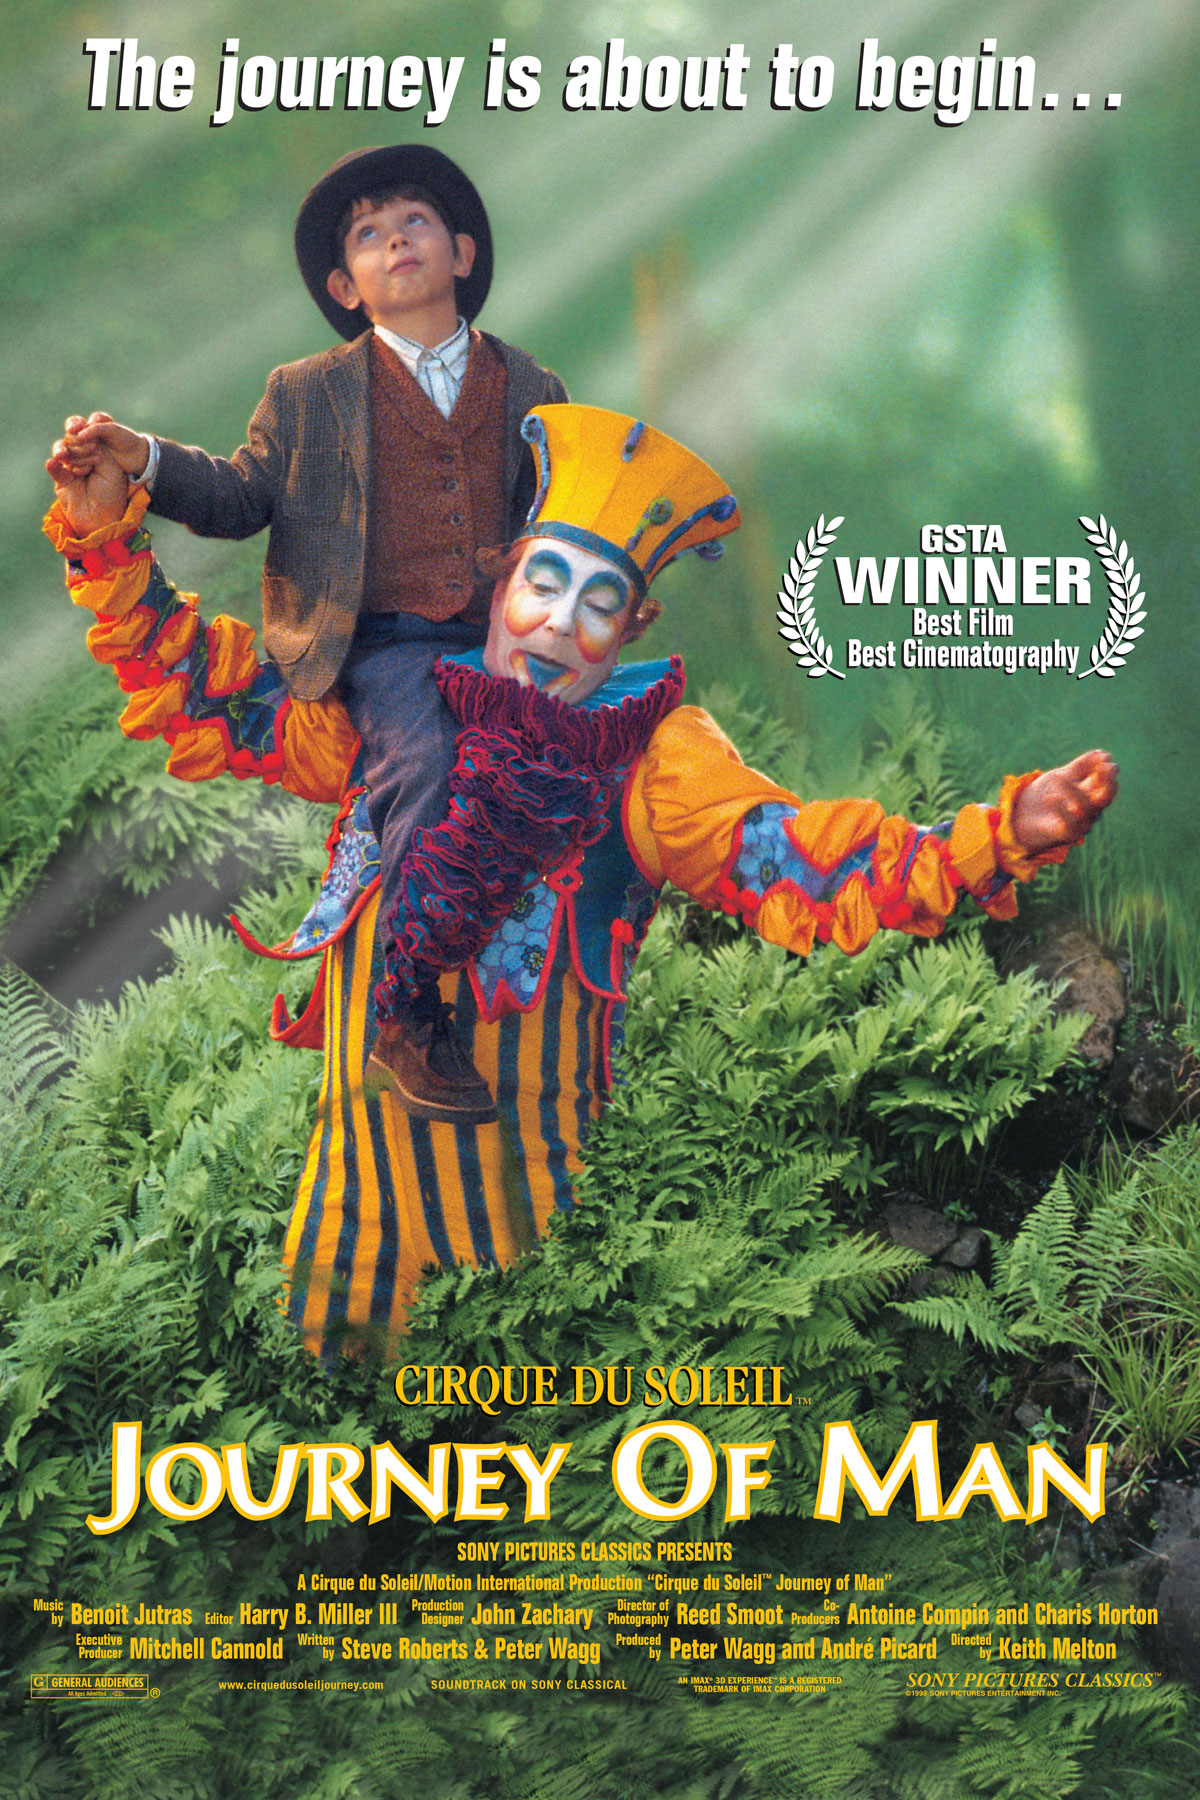 Film Fest premieres 'Cirque du Soleil Journey of Man' Sept. 9-14